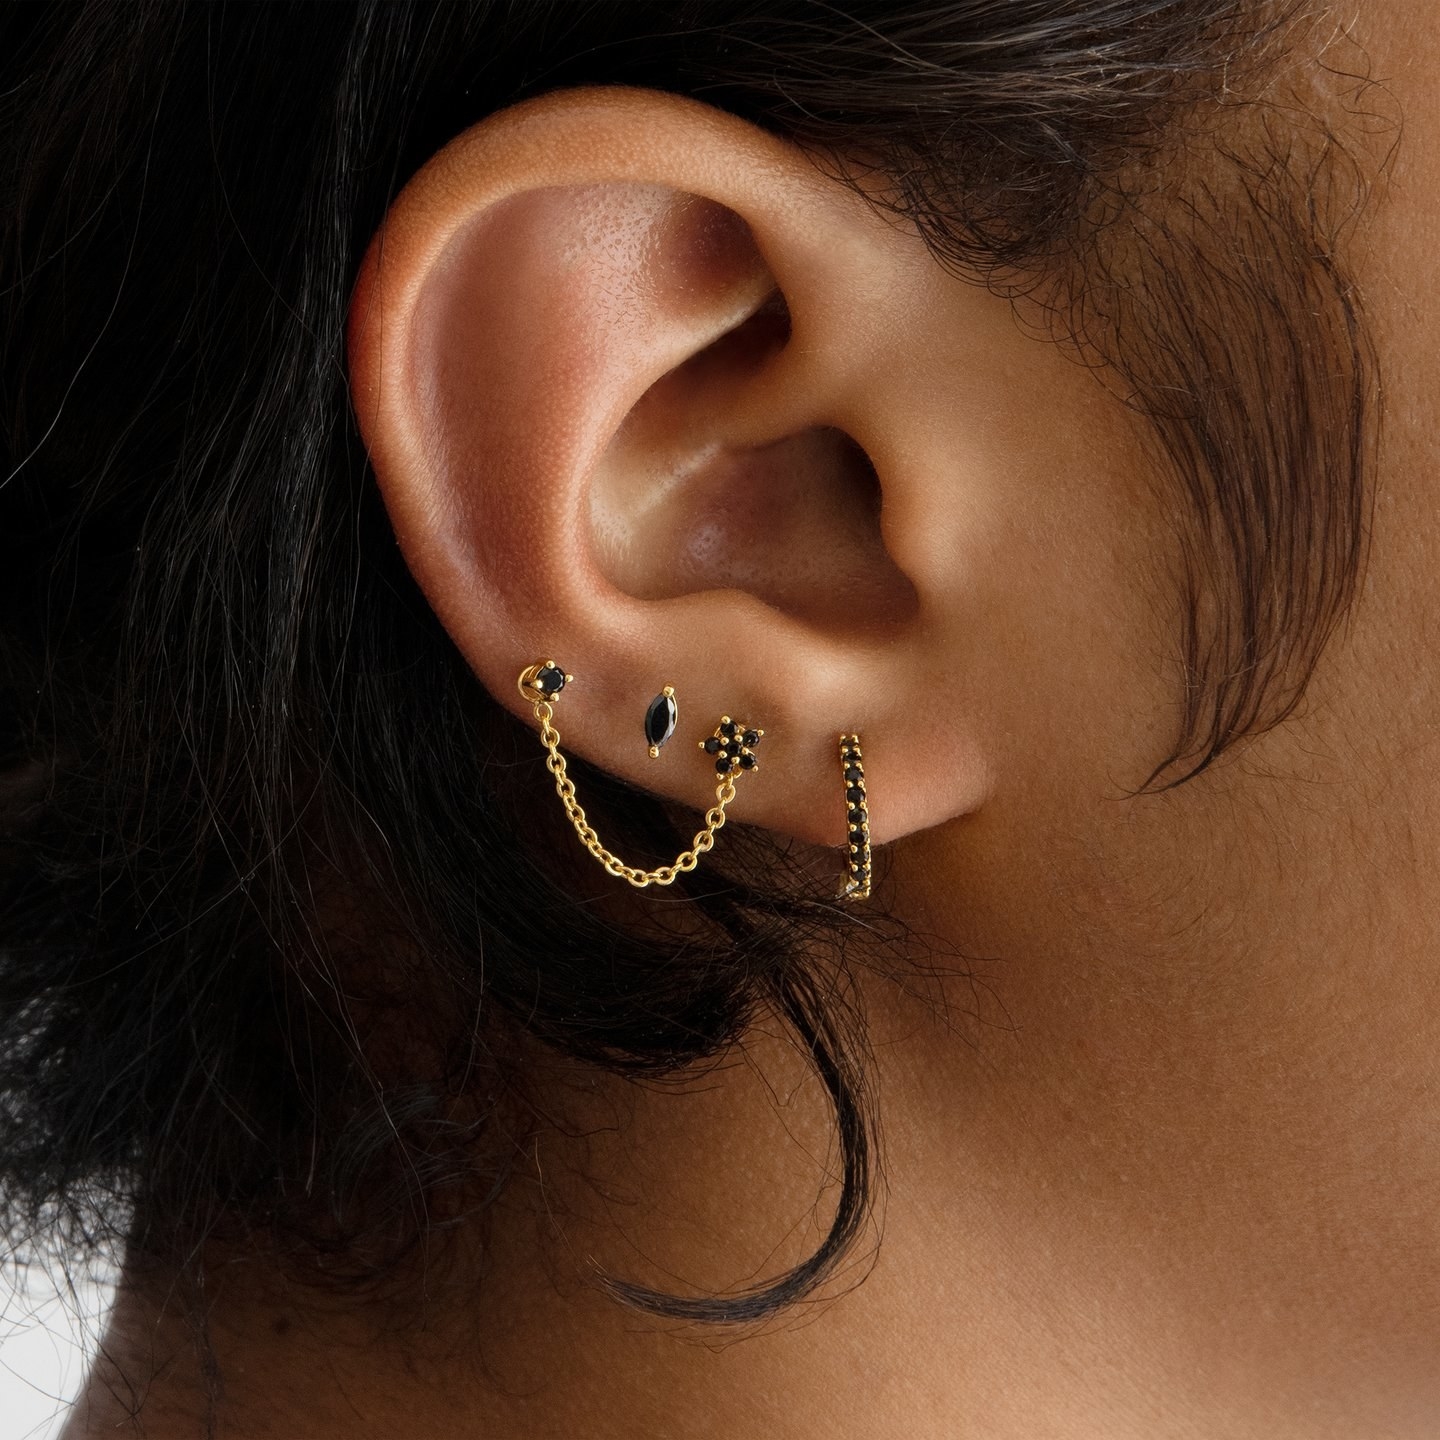 a model wearing four black stud earrings in various designs